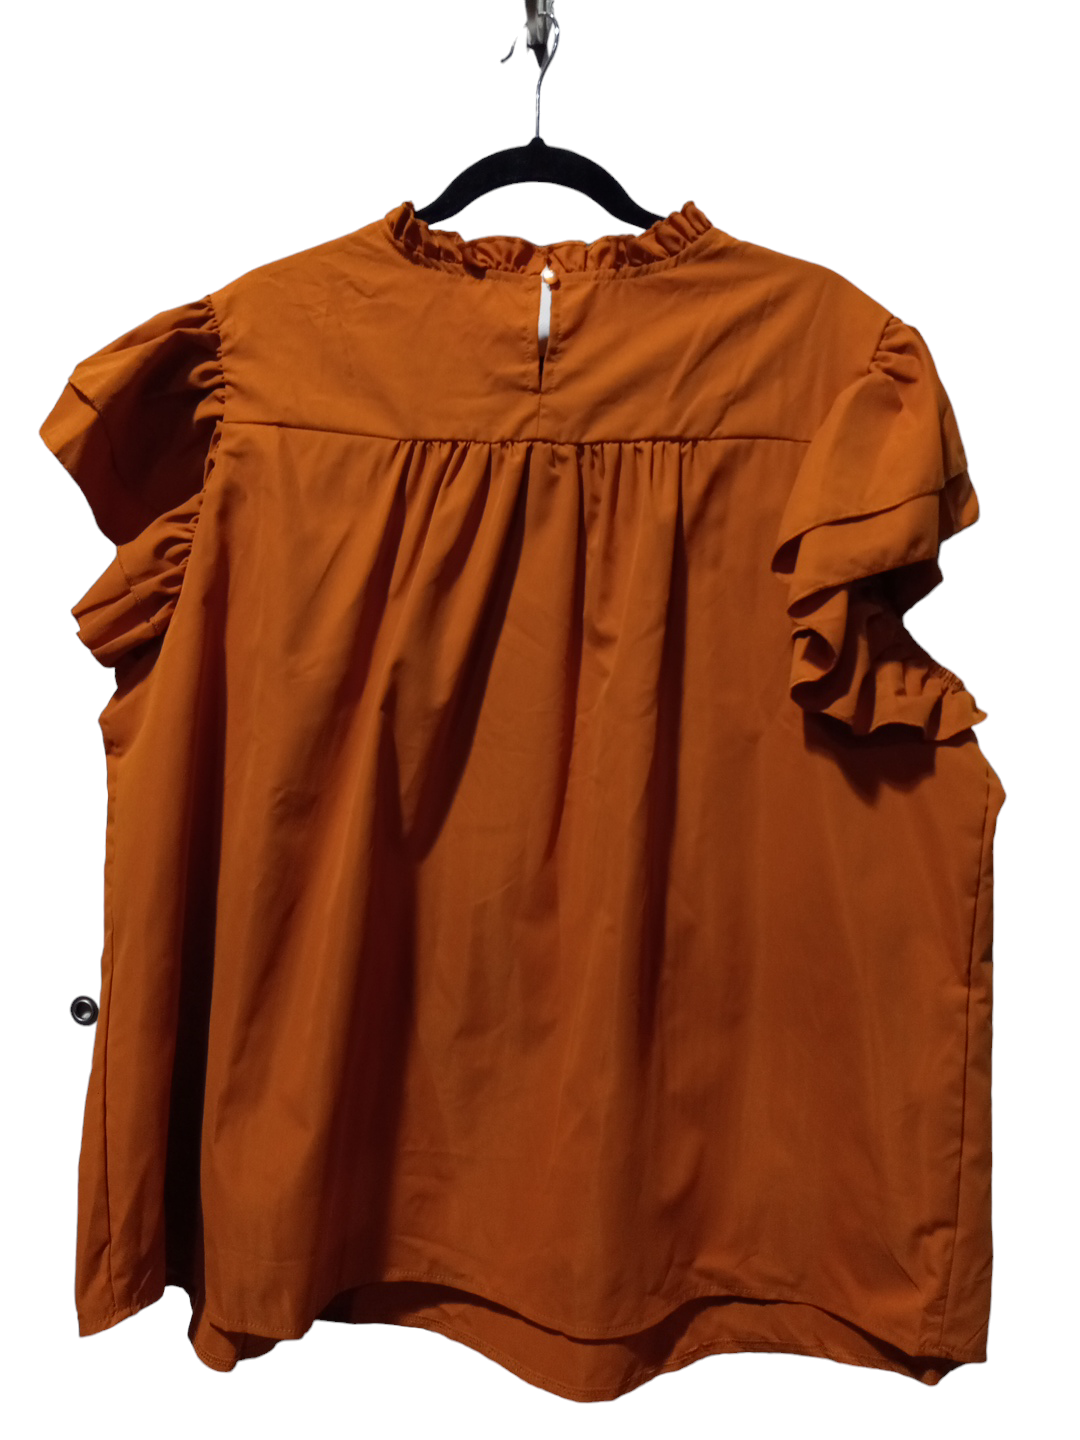 Orange Blouse Sleeveless Shein, Size 3x